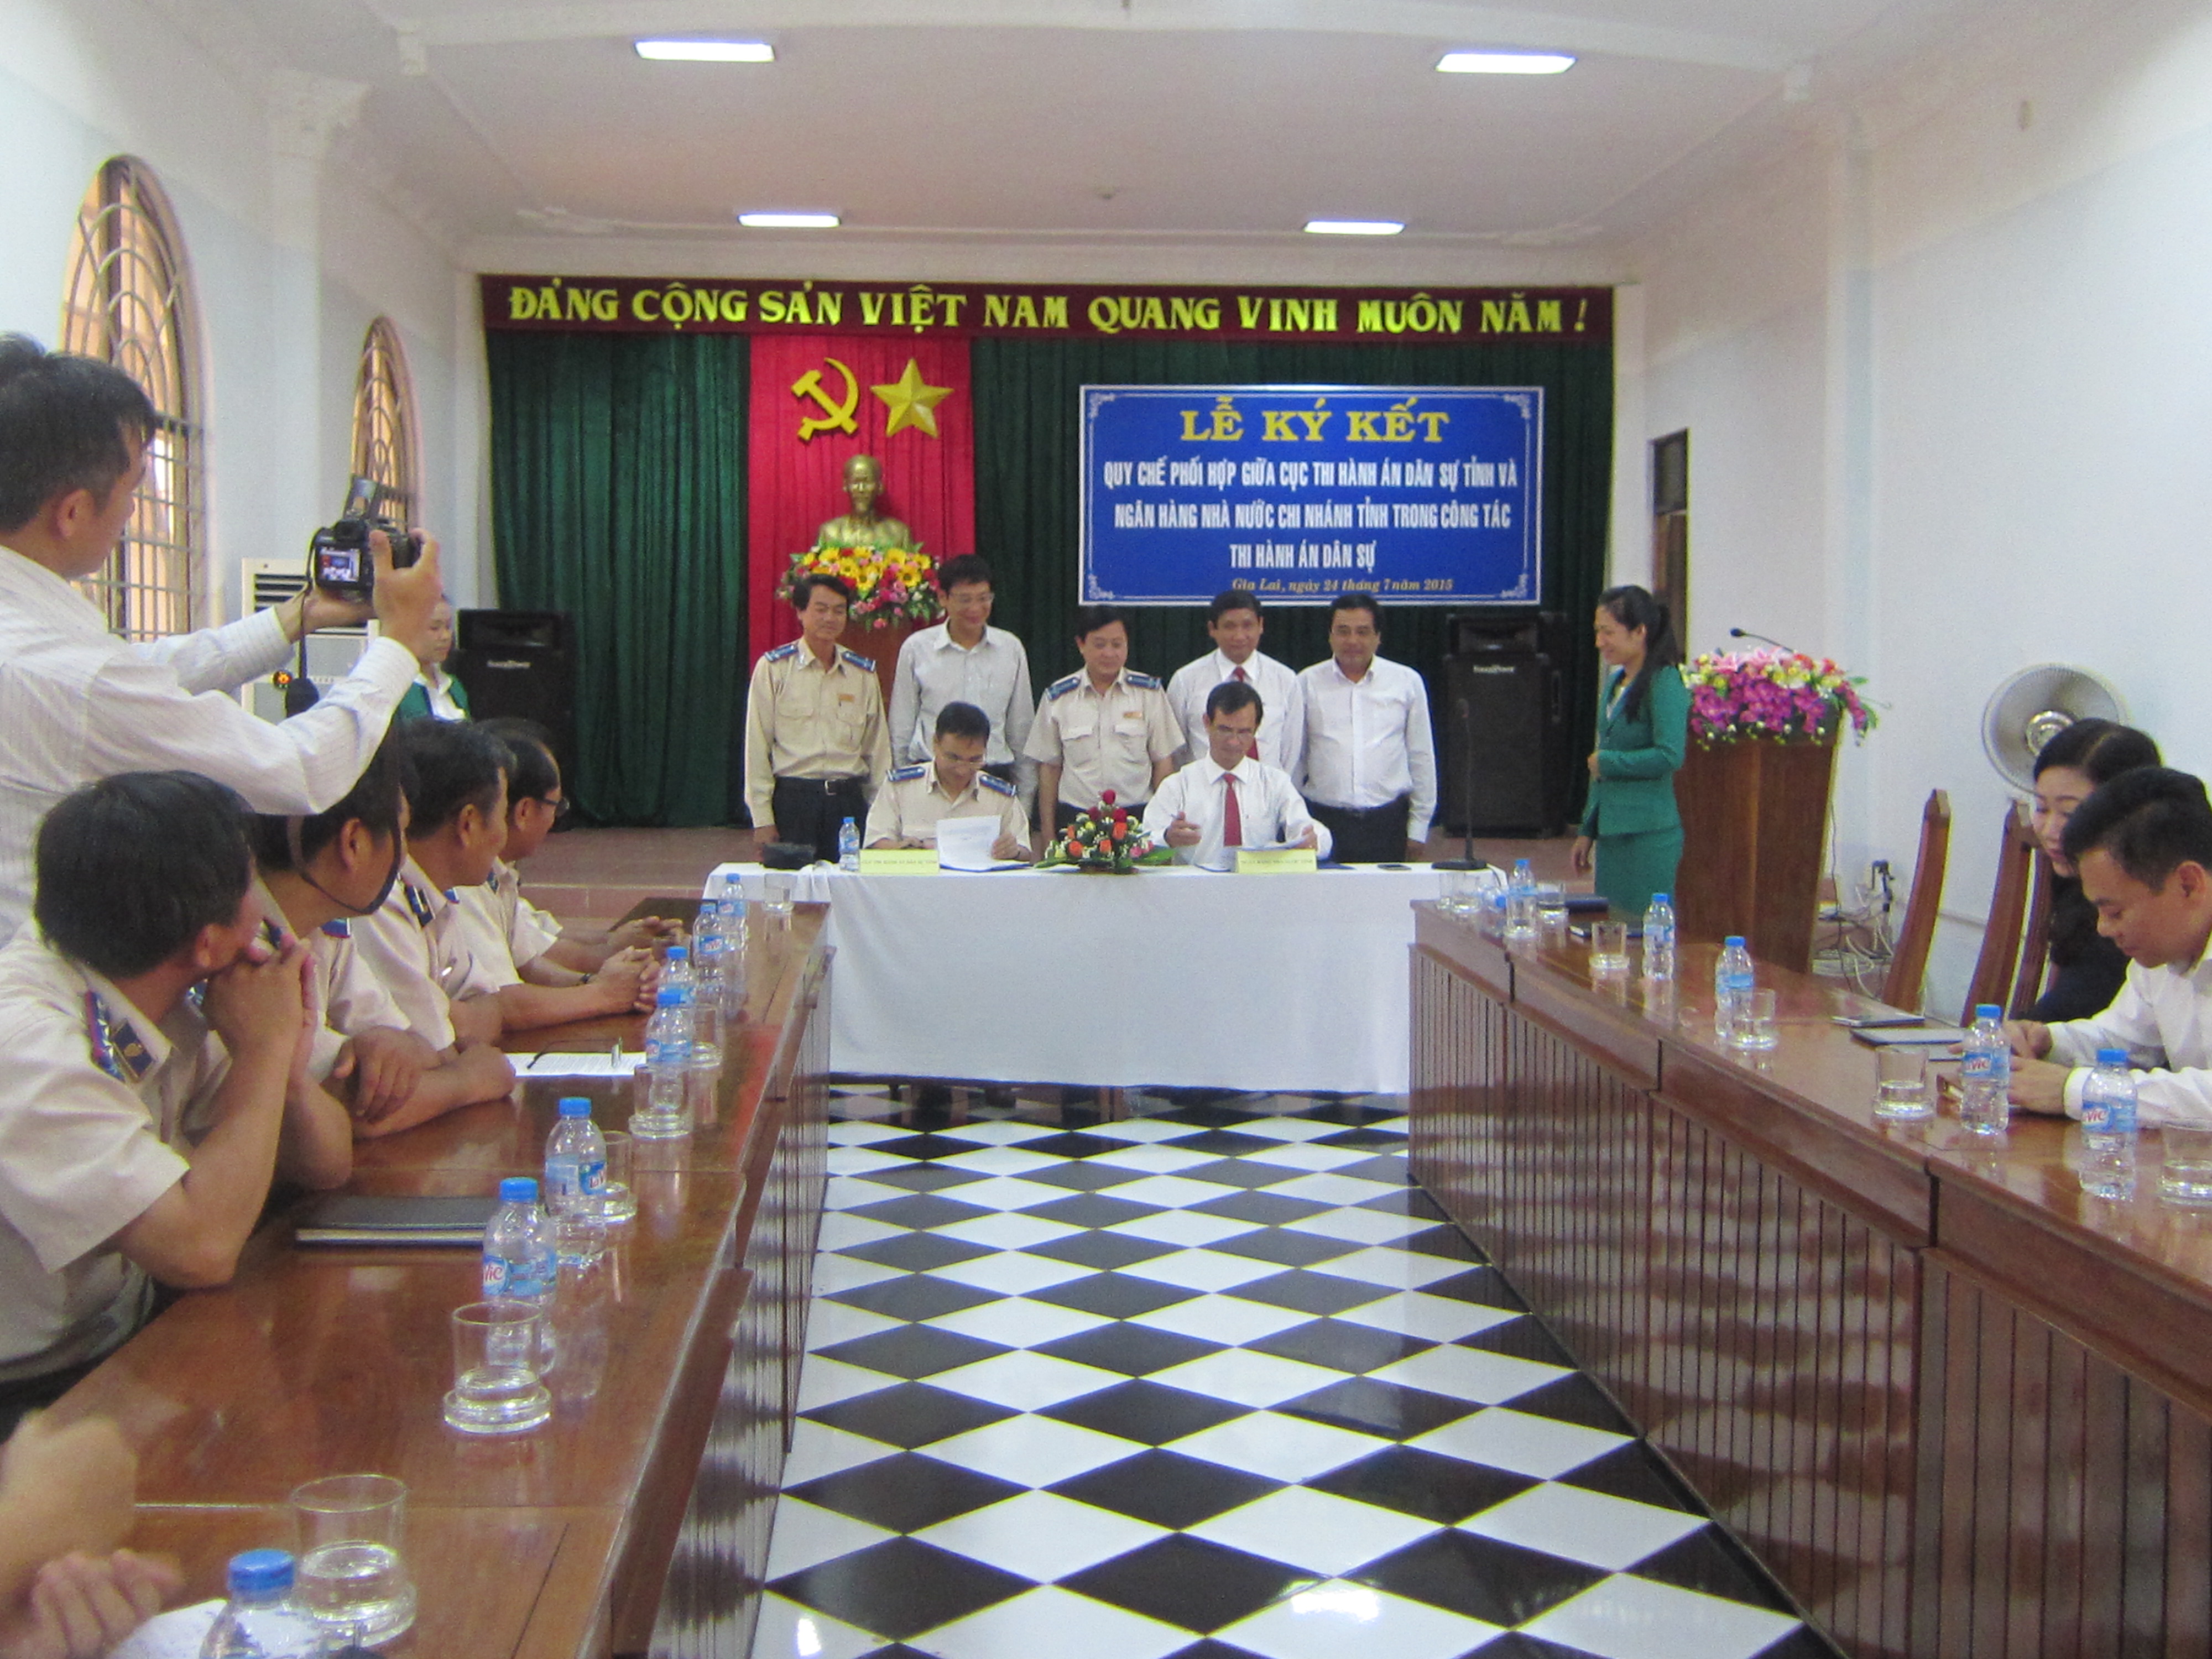 Cục Thi hành án dân sự tỉnh và Ngân hàng Nhà nước chi nhánh tỉnh Gia Lai ký kết Quy chế phối hợp trong công tác thi hành án dân sự